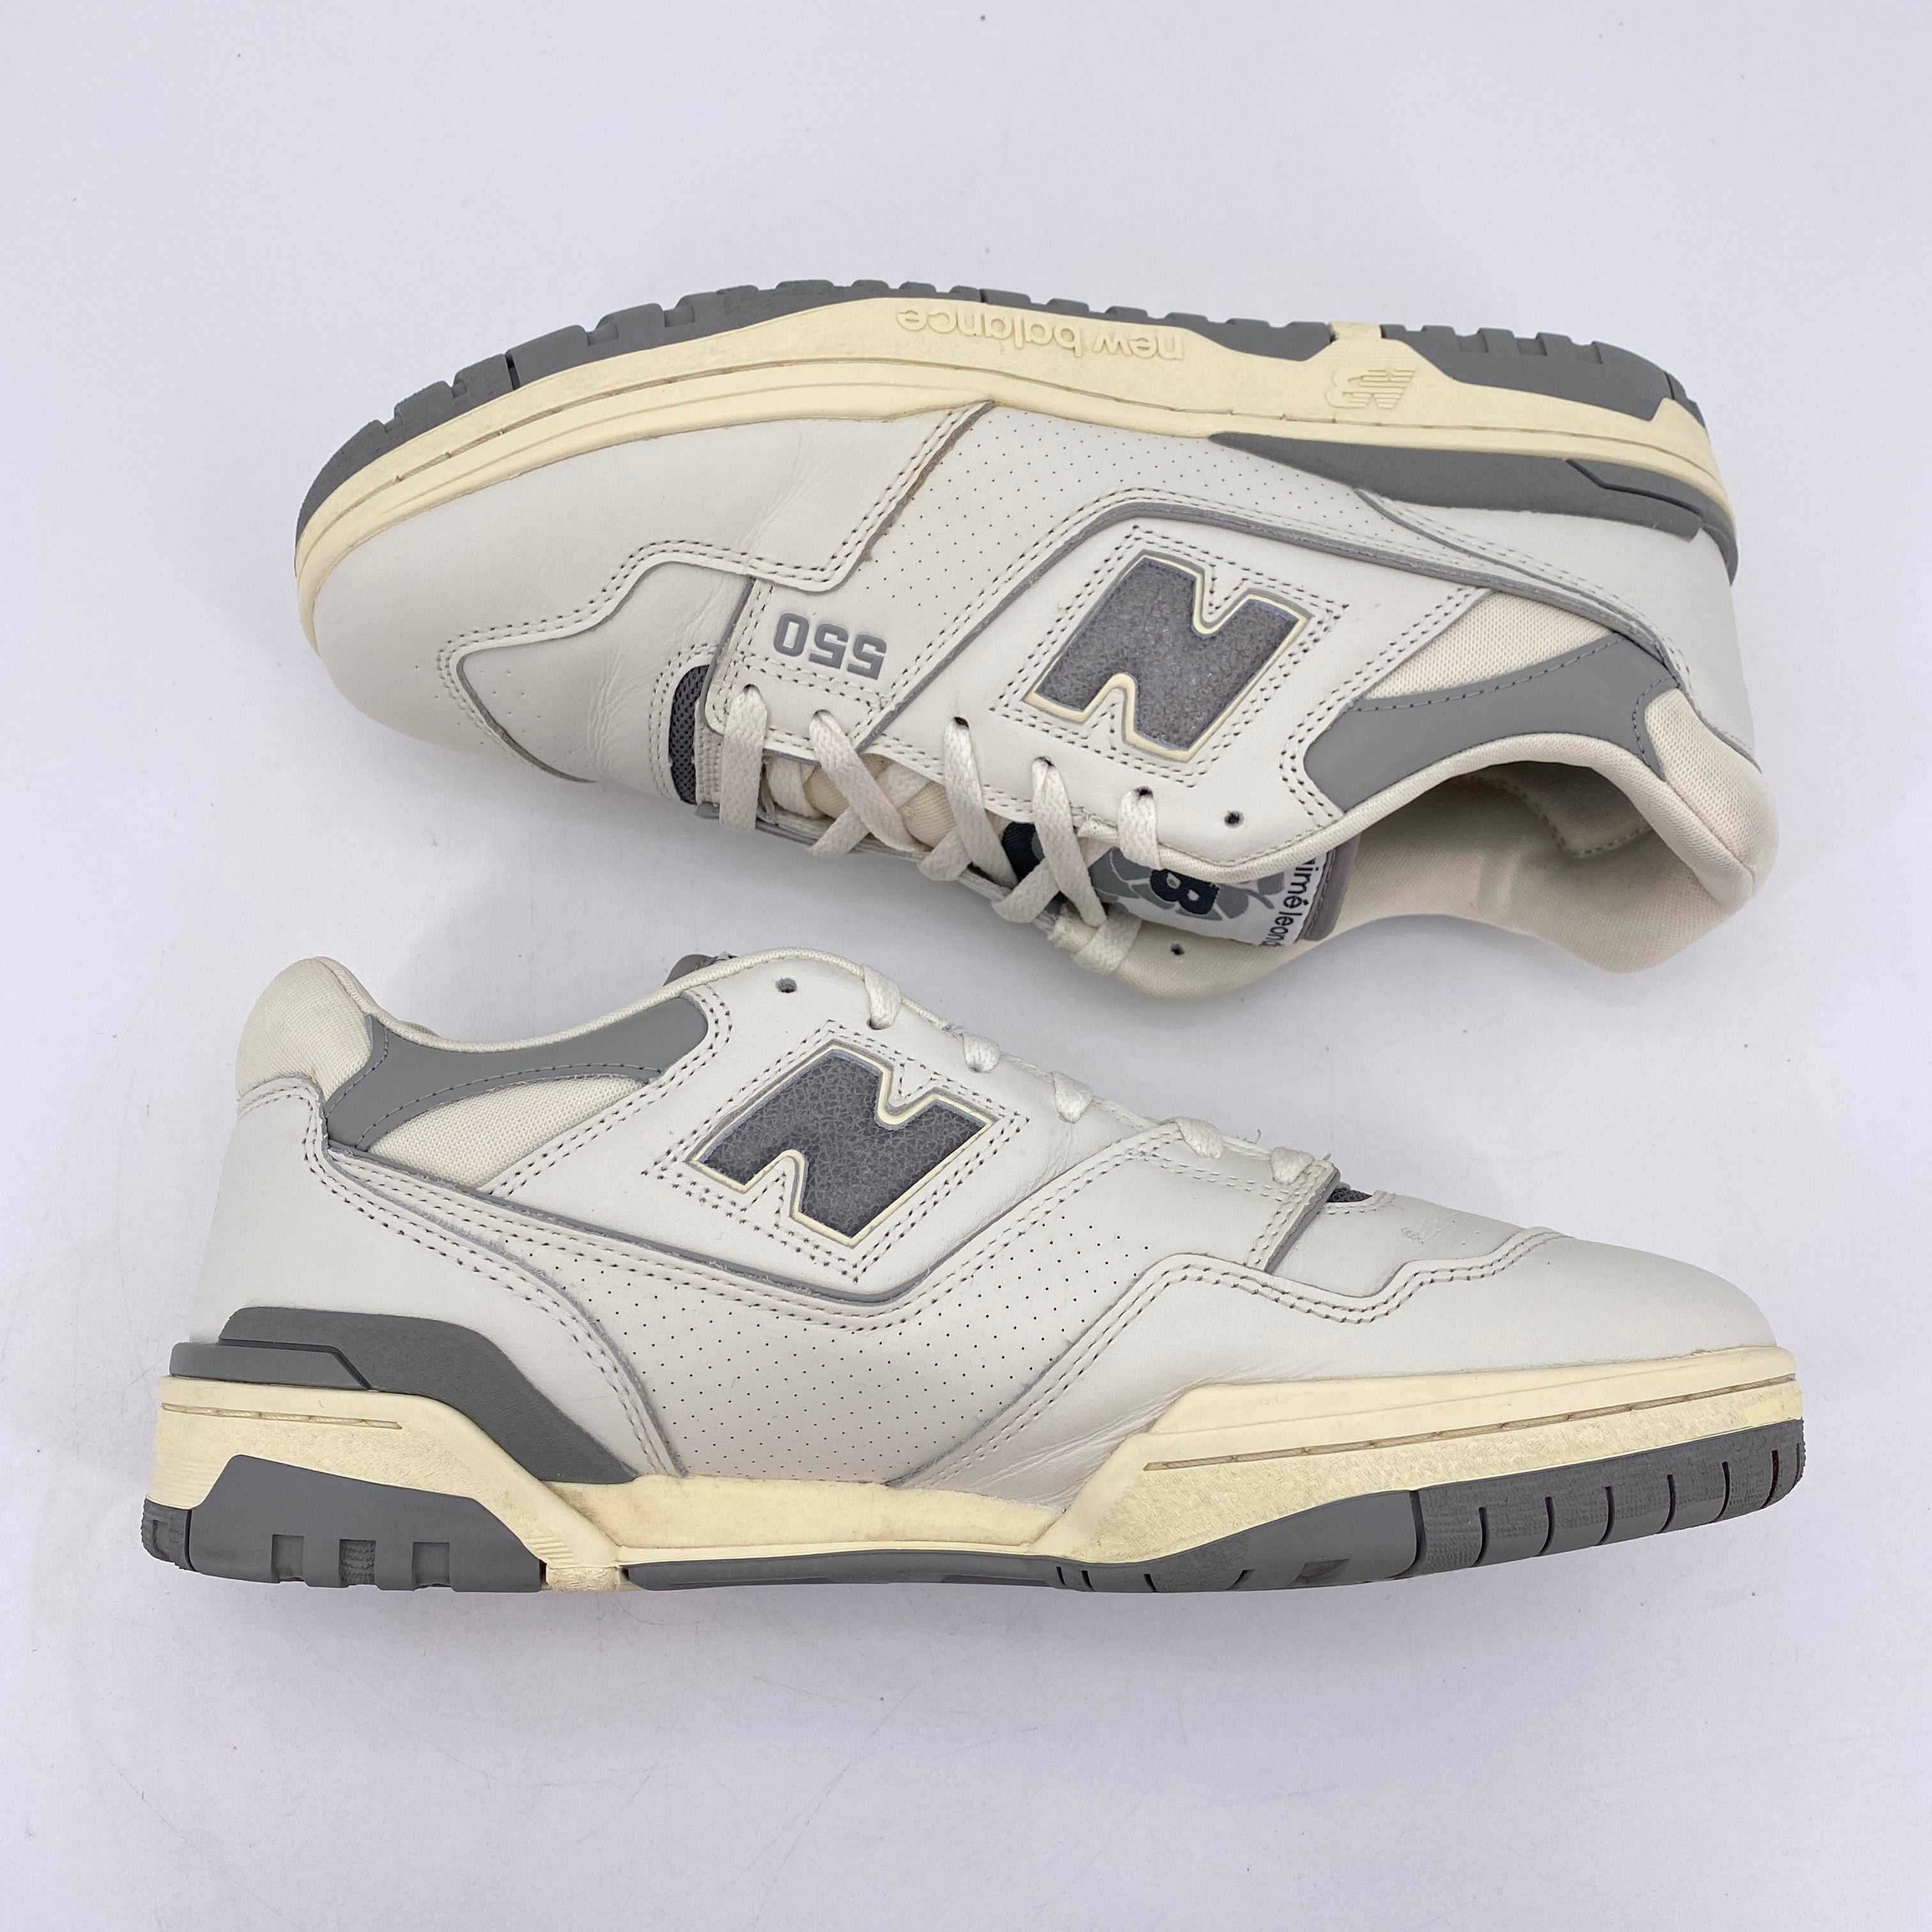 New Balance 550 / ALD "White Grey" 2020 Used Size 12